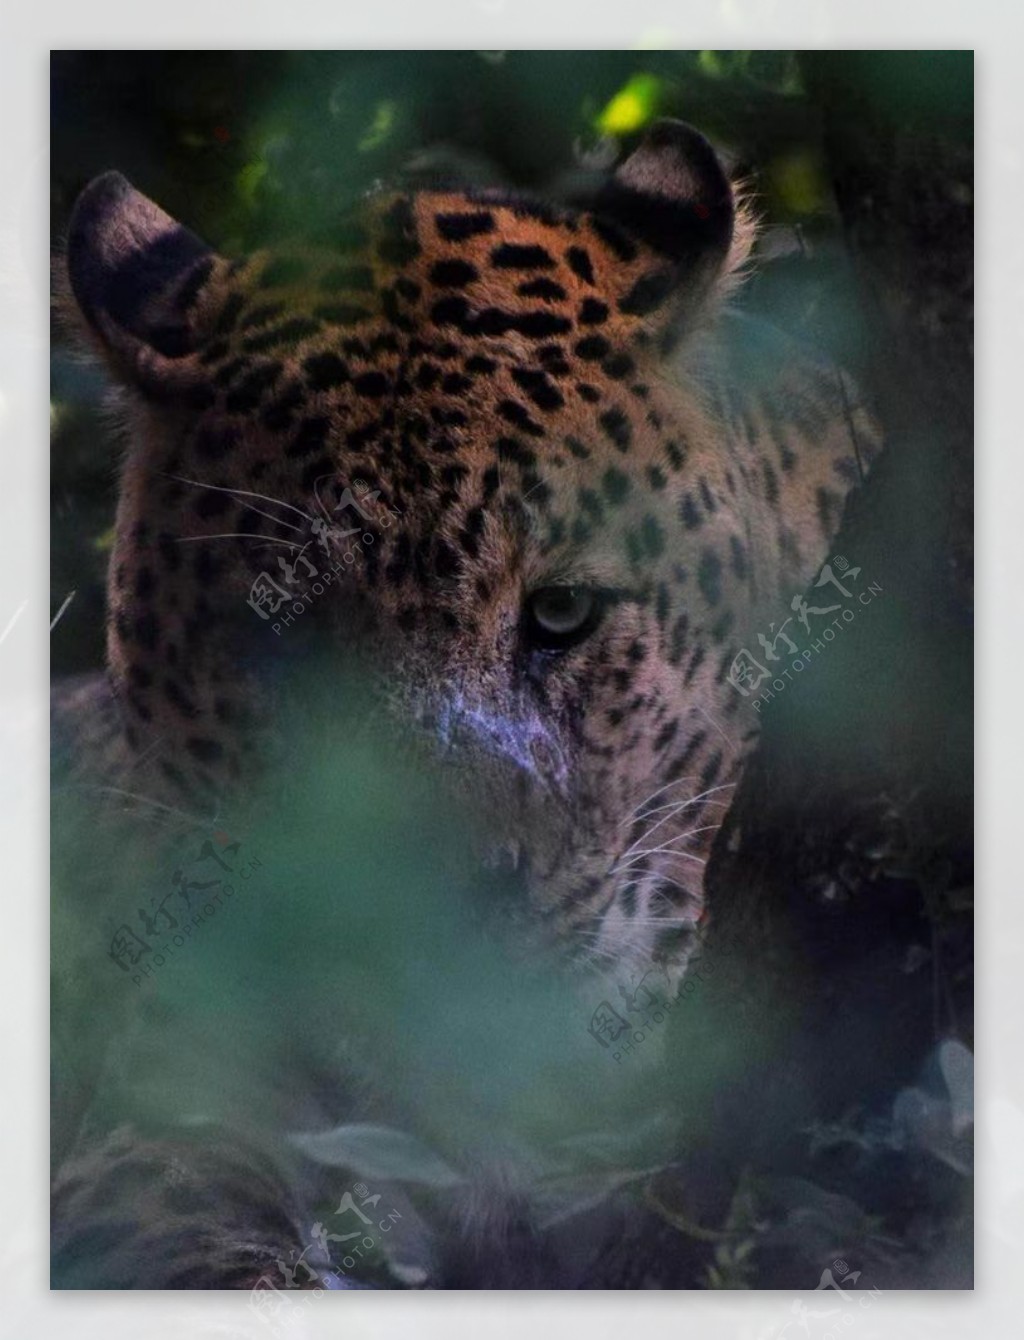 壁纸1280×1024豹子写真 1 20壁纸,分类动物 豹子写真 第一辑壁纸图片-动物壁纸-动物图片素材-桌面壁纸